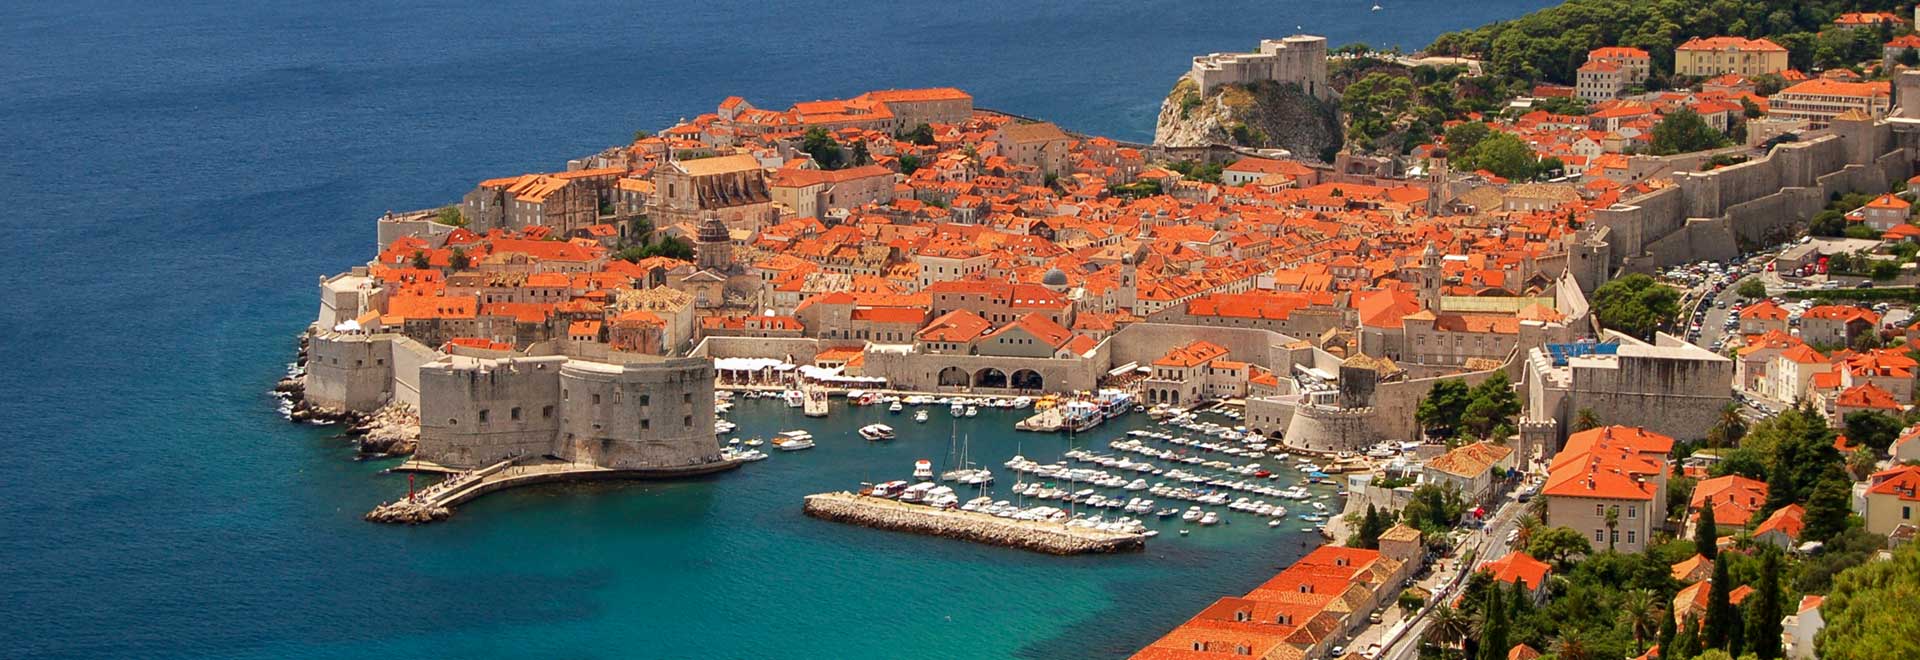 Europe Treasures of Croatia Old Town Dubrovnik MH